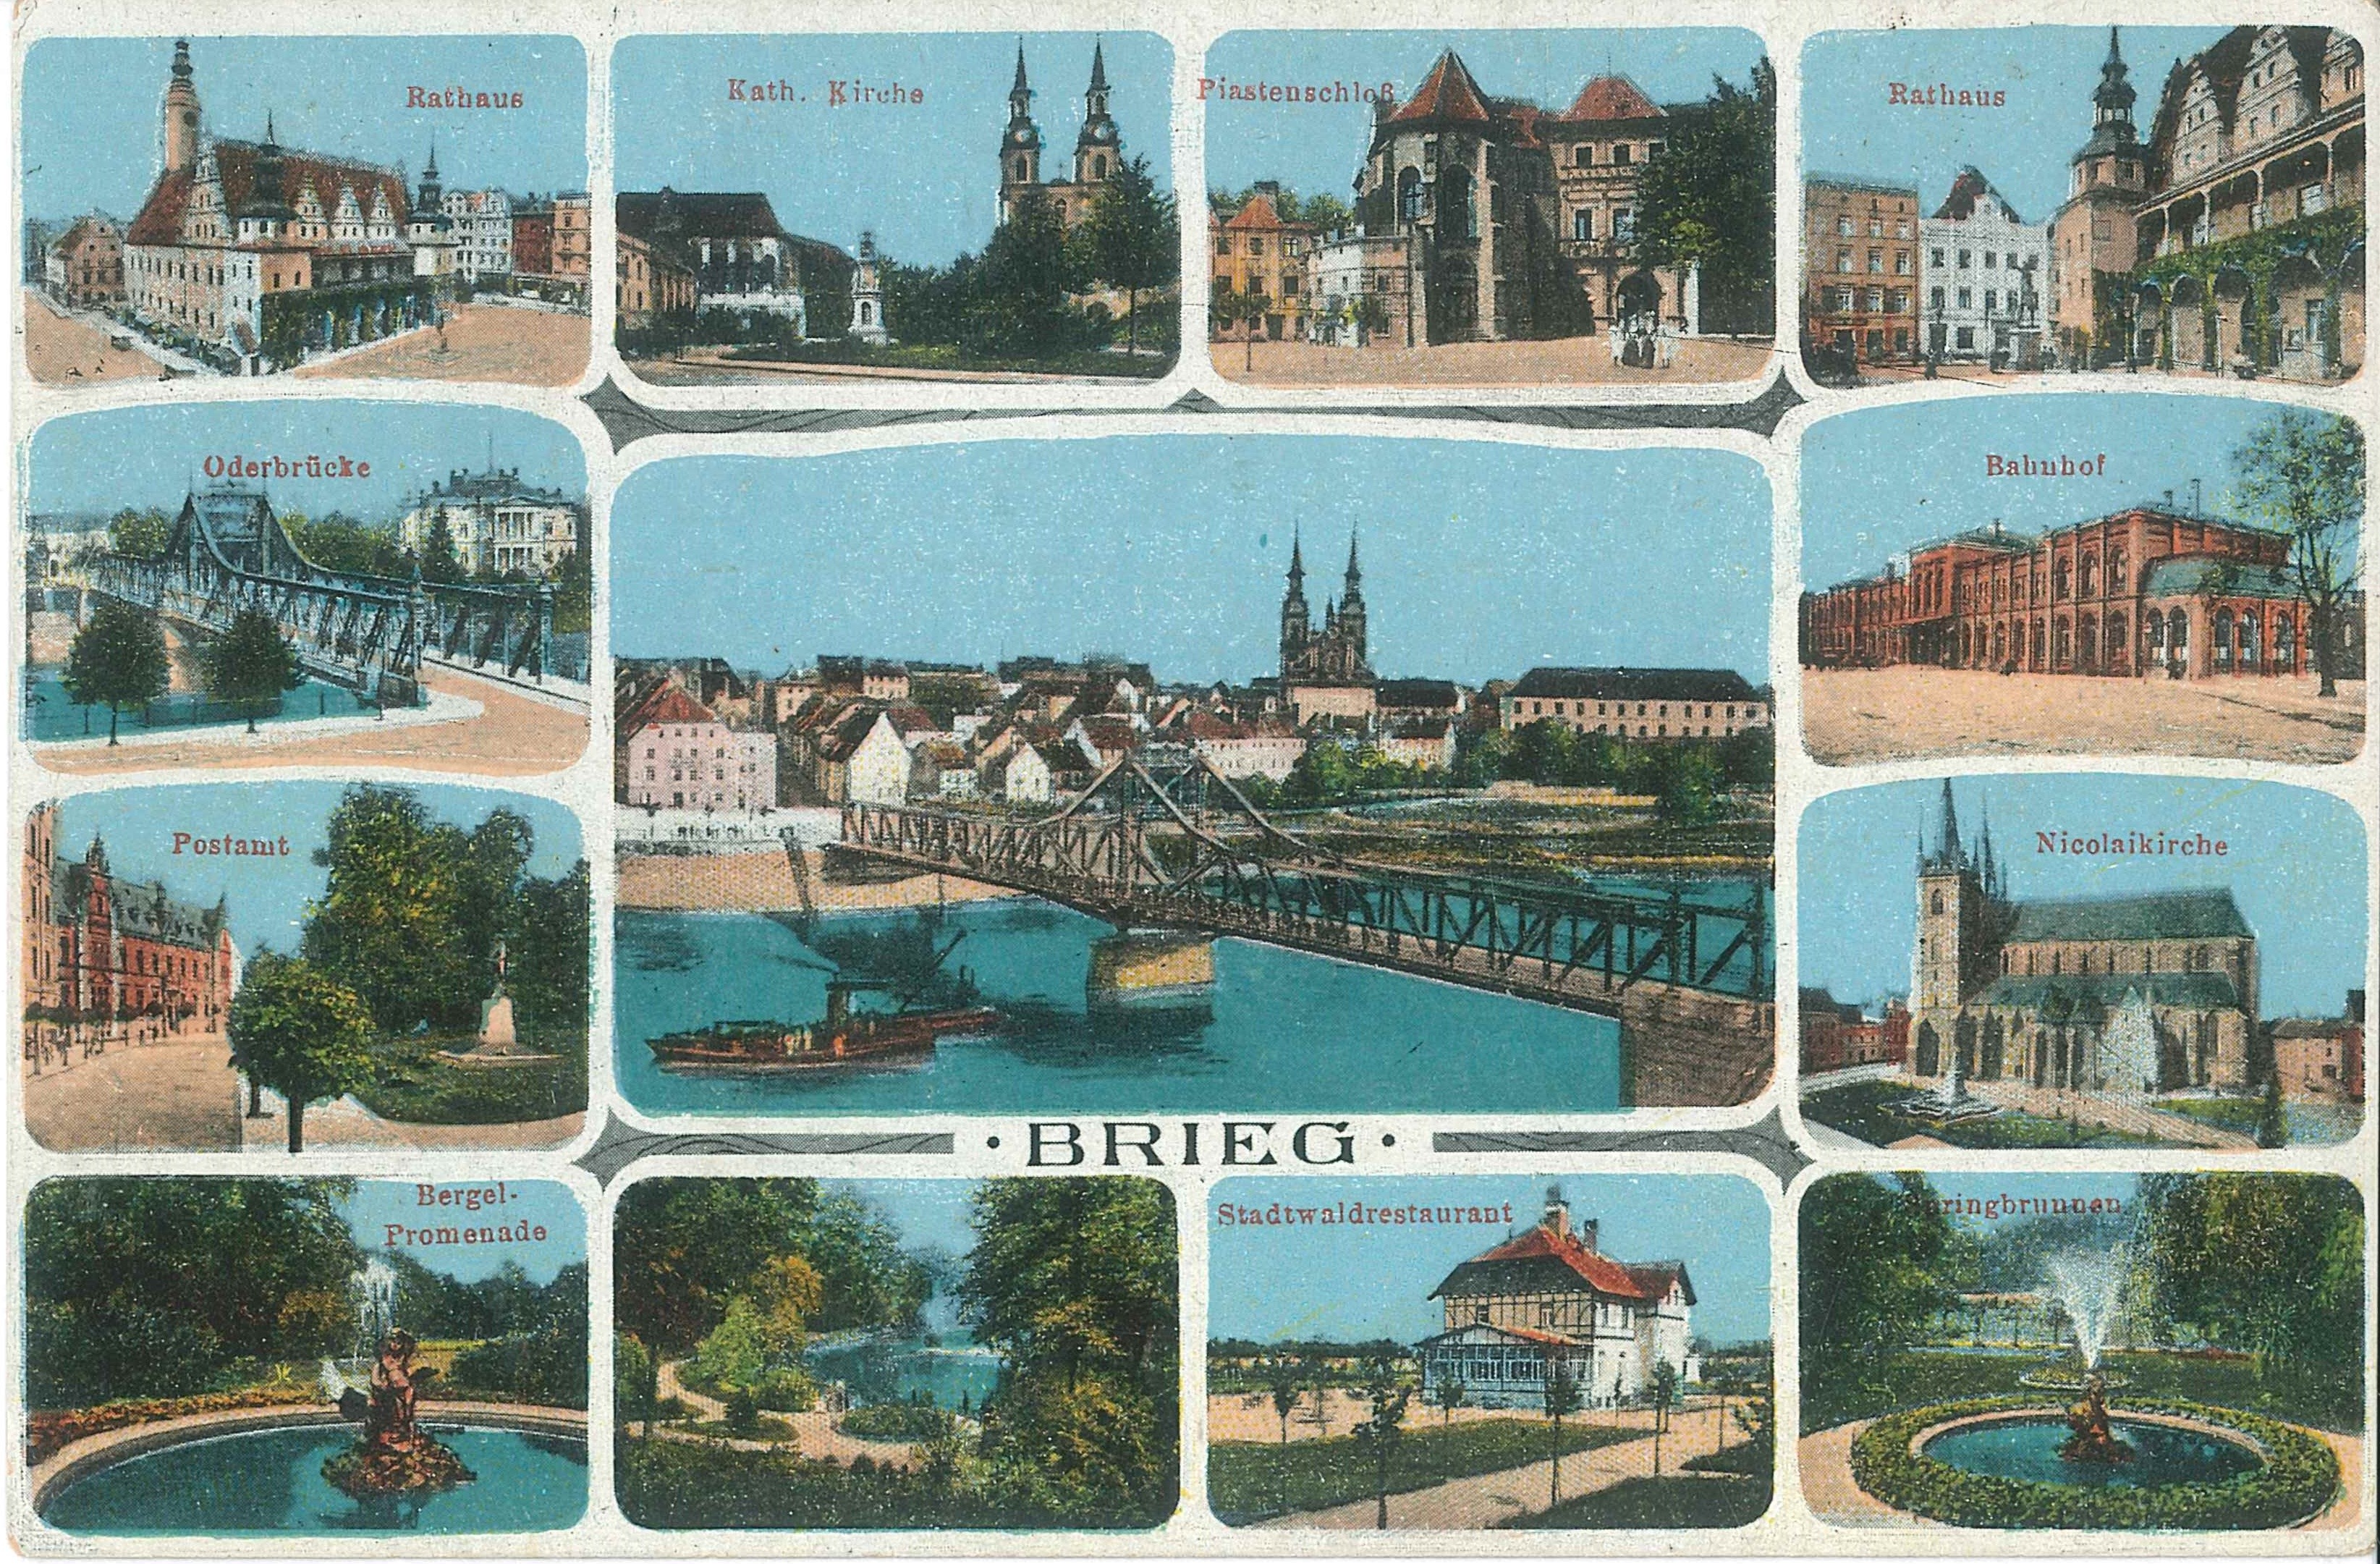 Ansichtskarte der Stadt Brieg in Polen (REM CC BY-NC-SA)